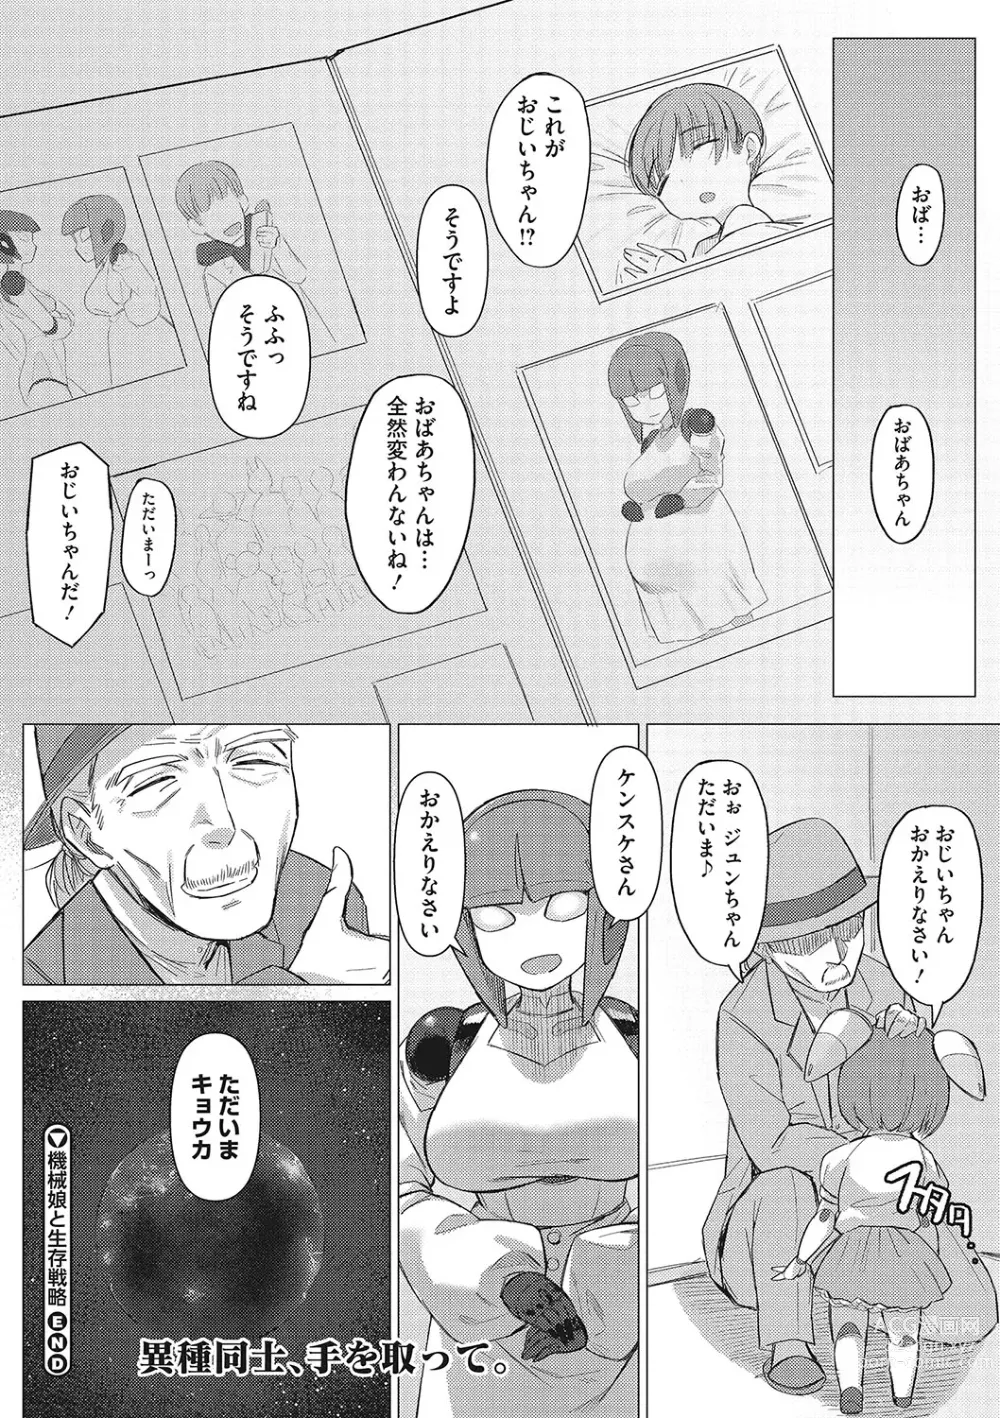 Page 103 of manga Jingai The Universe